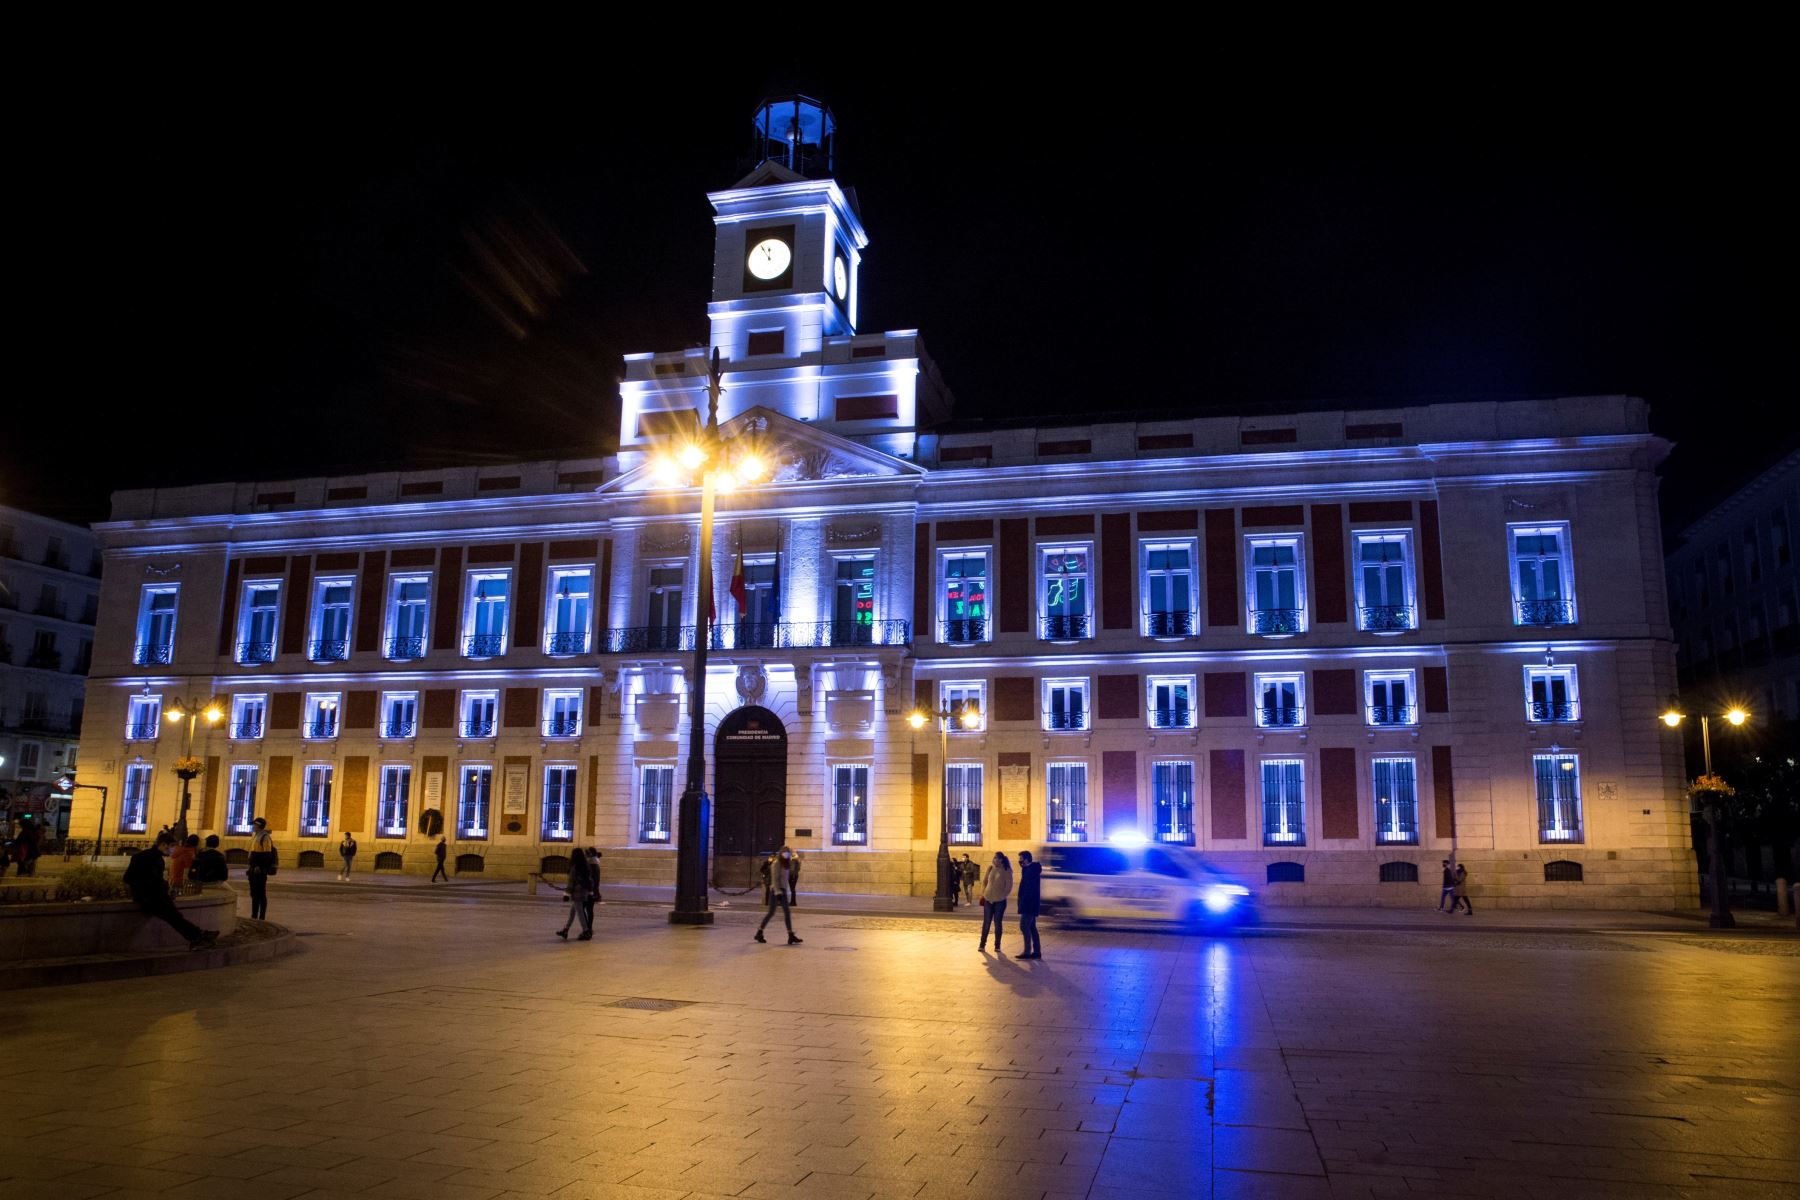 La madrileña Puerta del Sol vacía minutos antes de la medianoche de hoy sábado luego que el gobierno prohibiera las reuniones de 00.00 a 6.00 de no convivientes. Foto: EFE